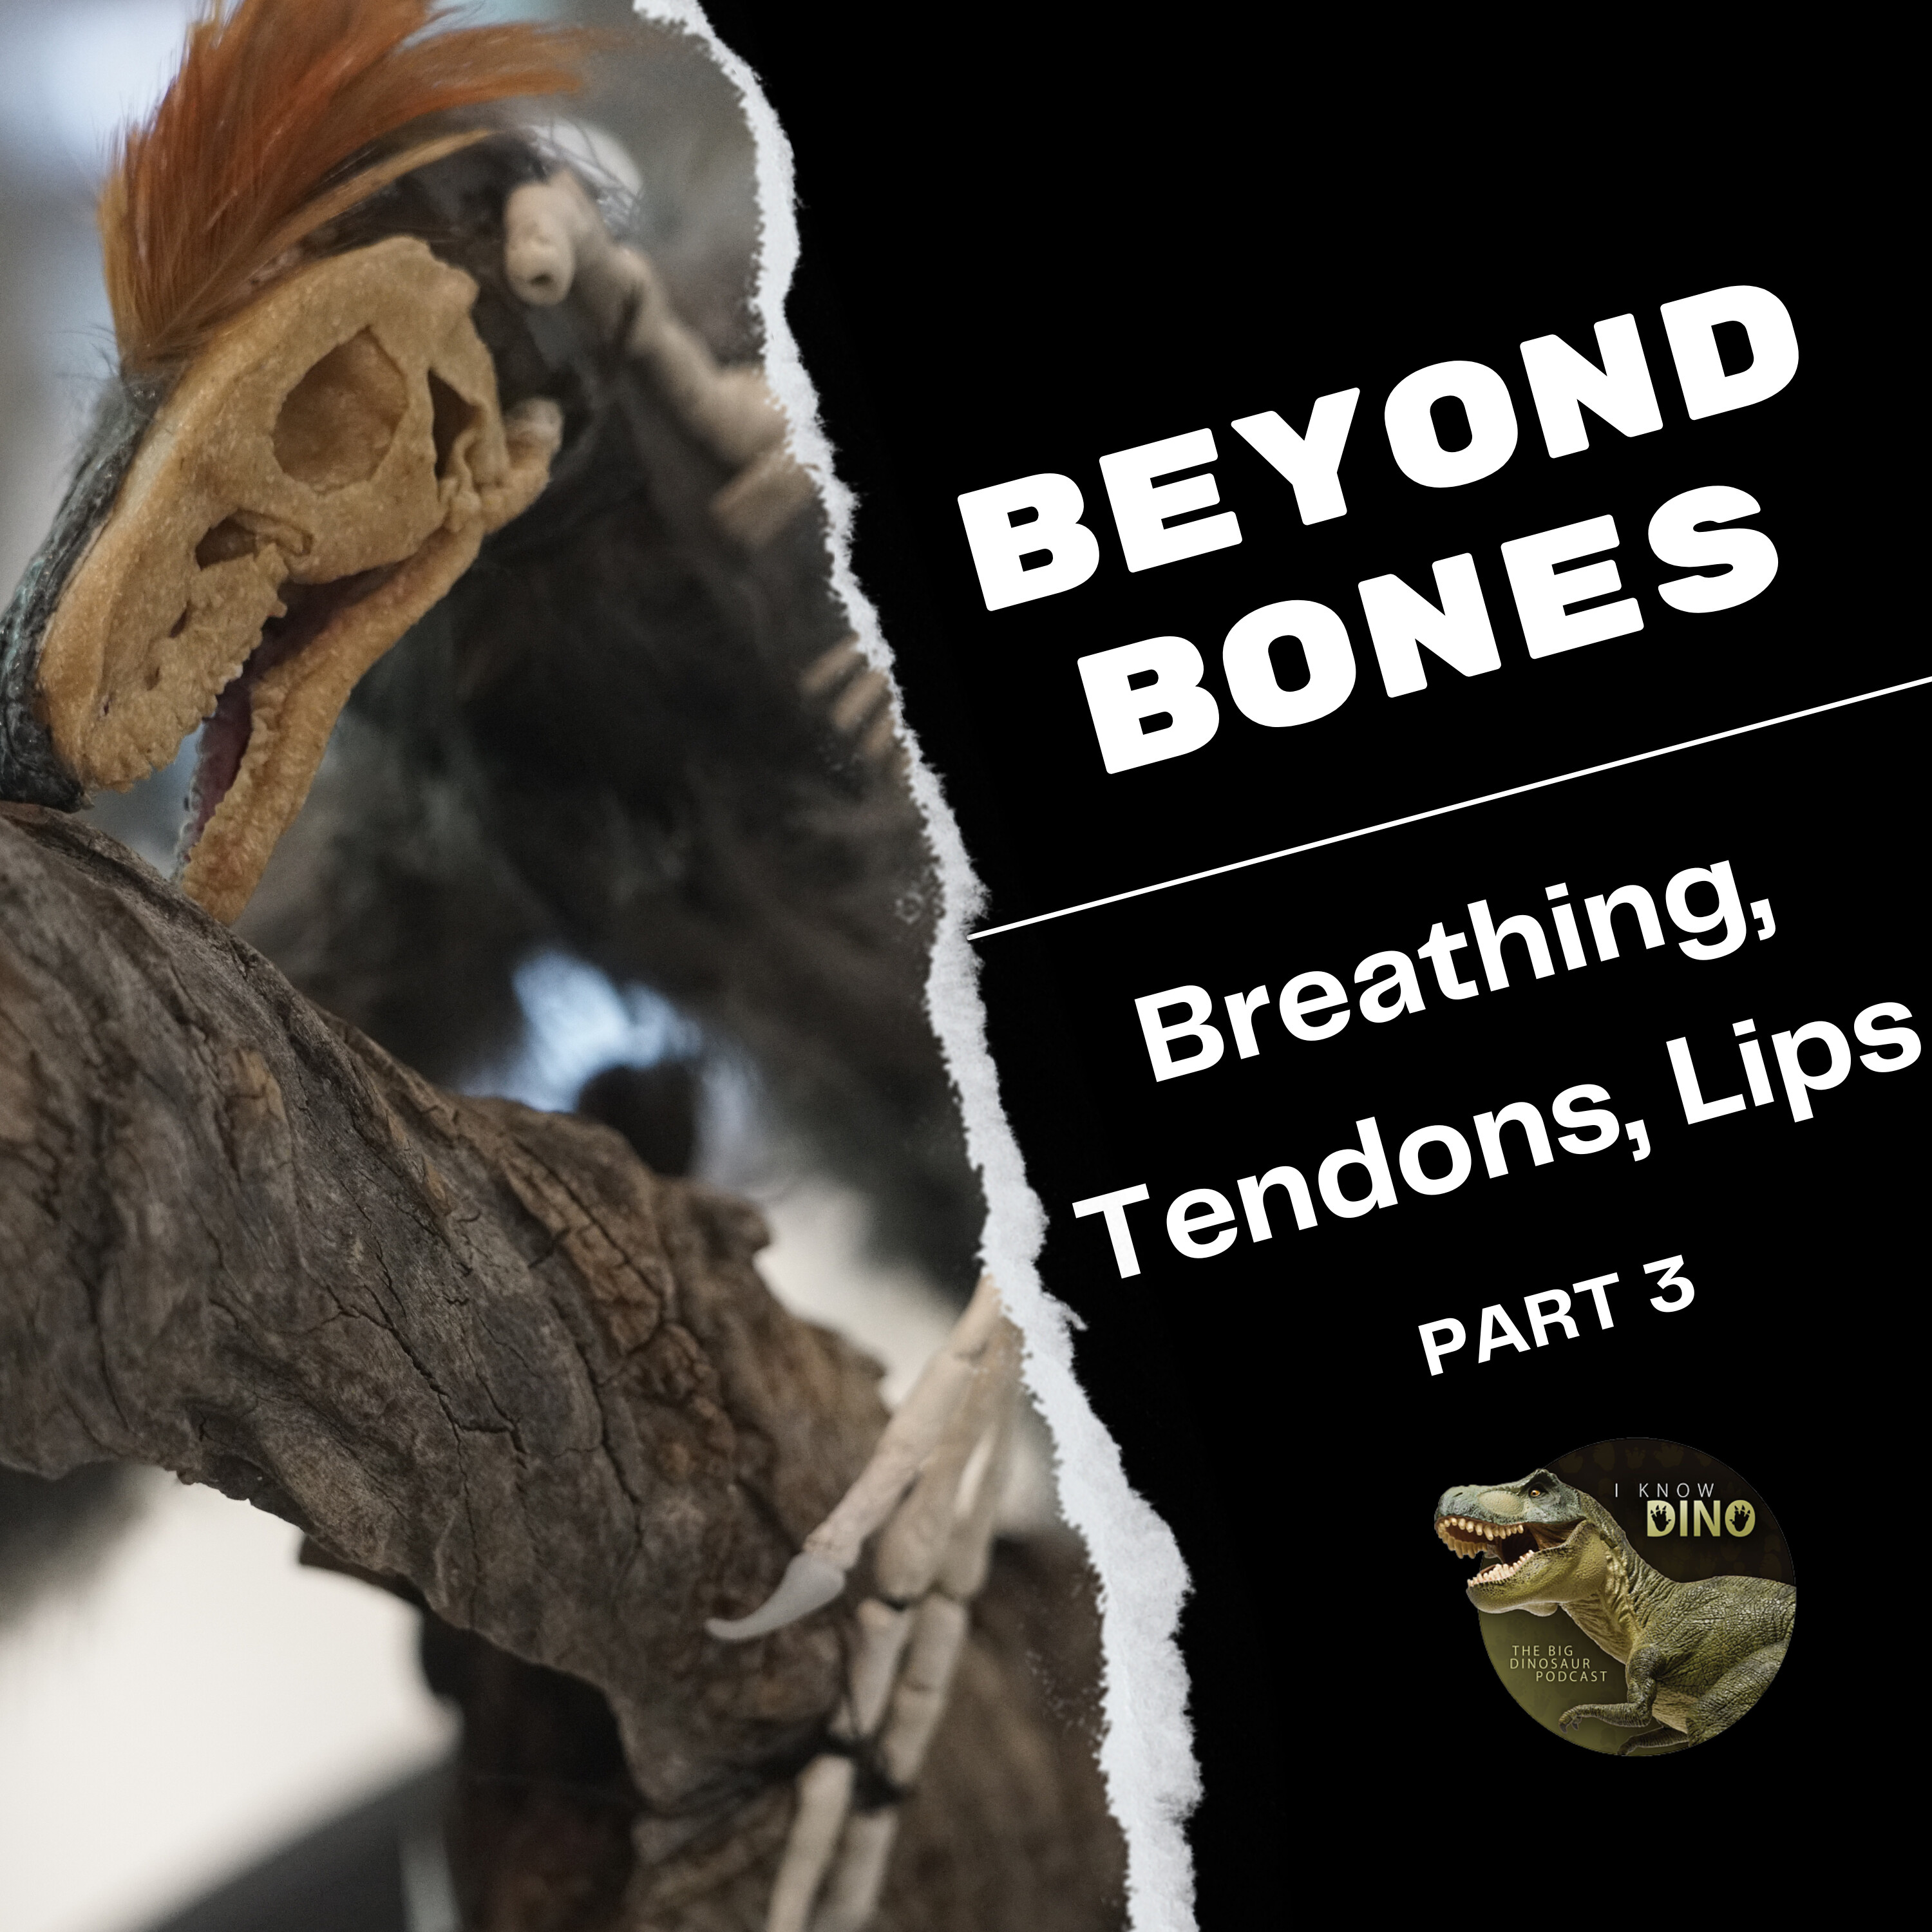 Beyond Bones: Breathing, Tendons, and Lips